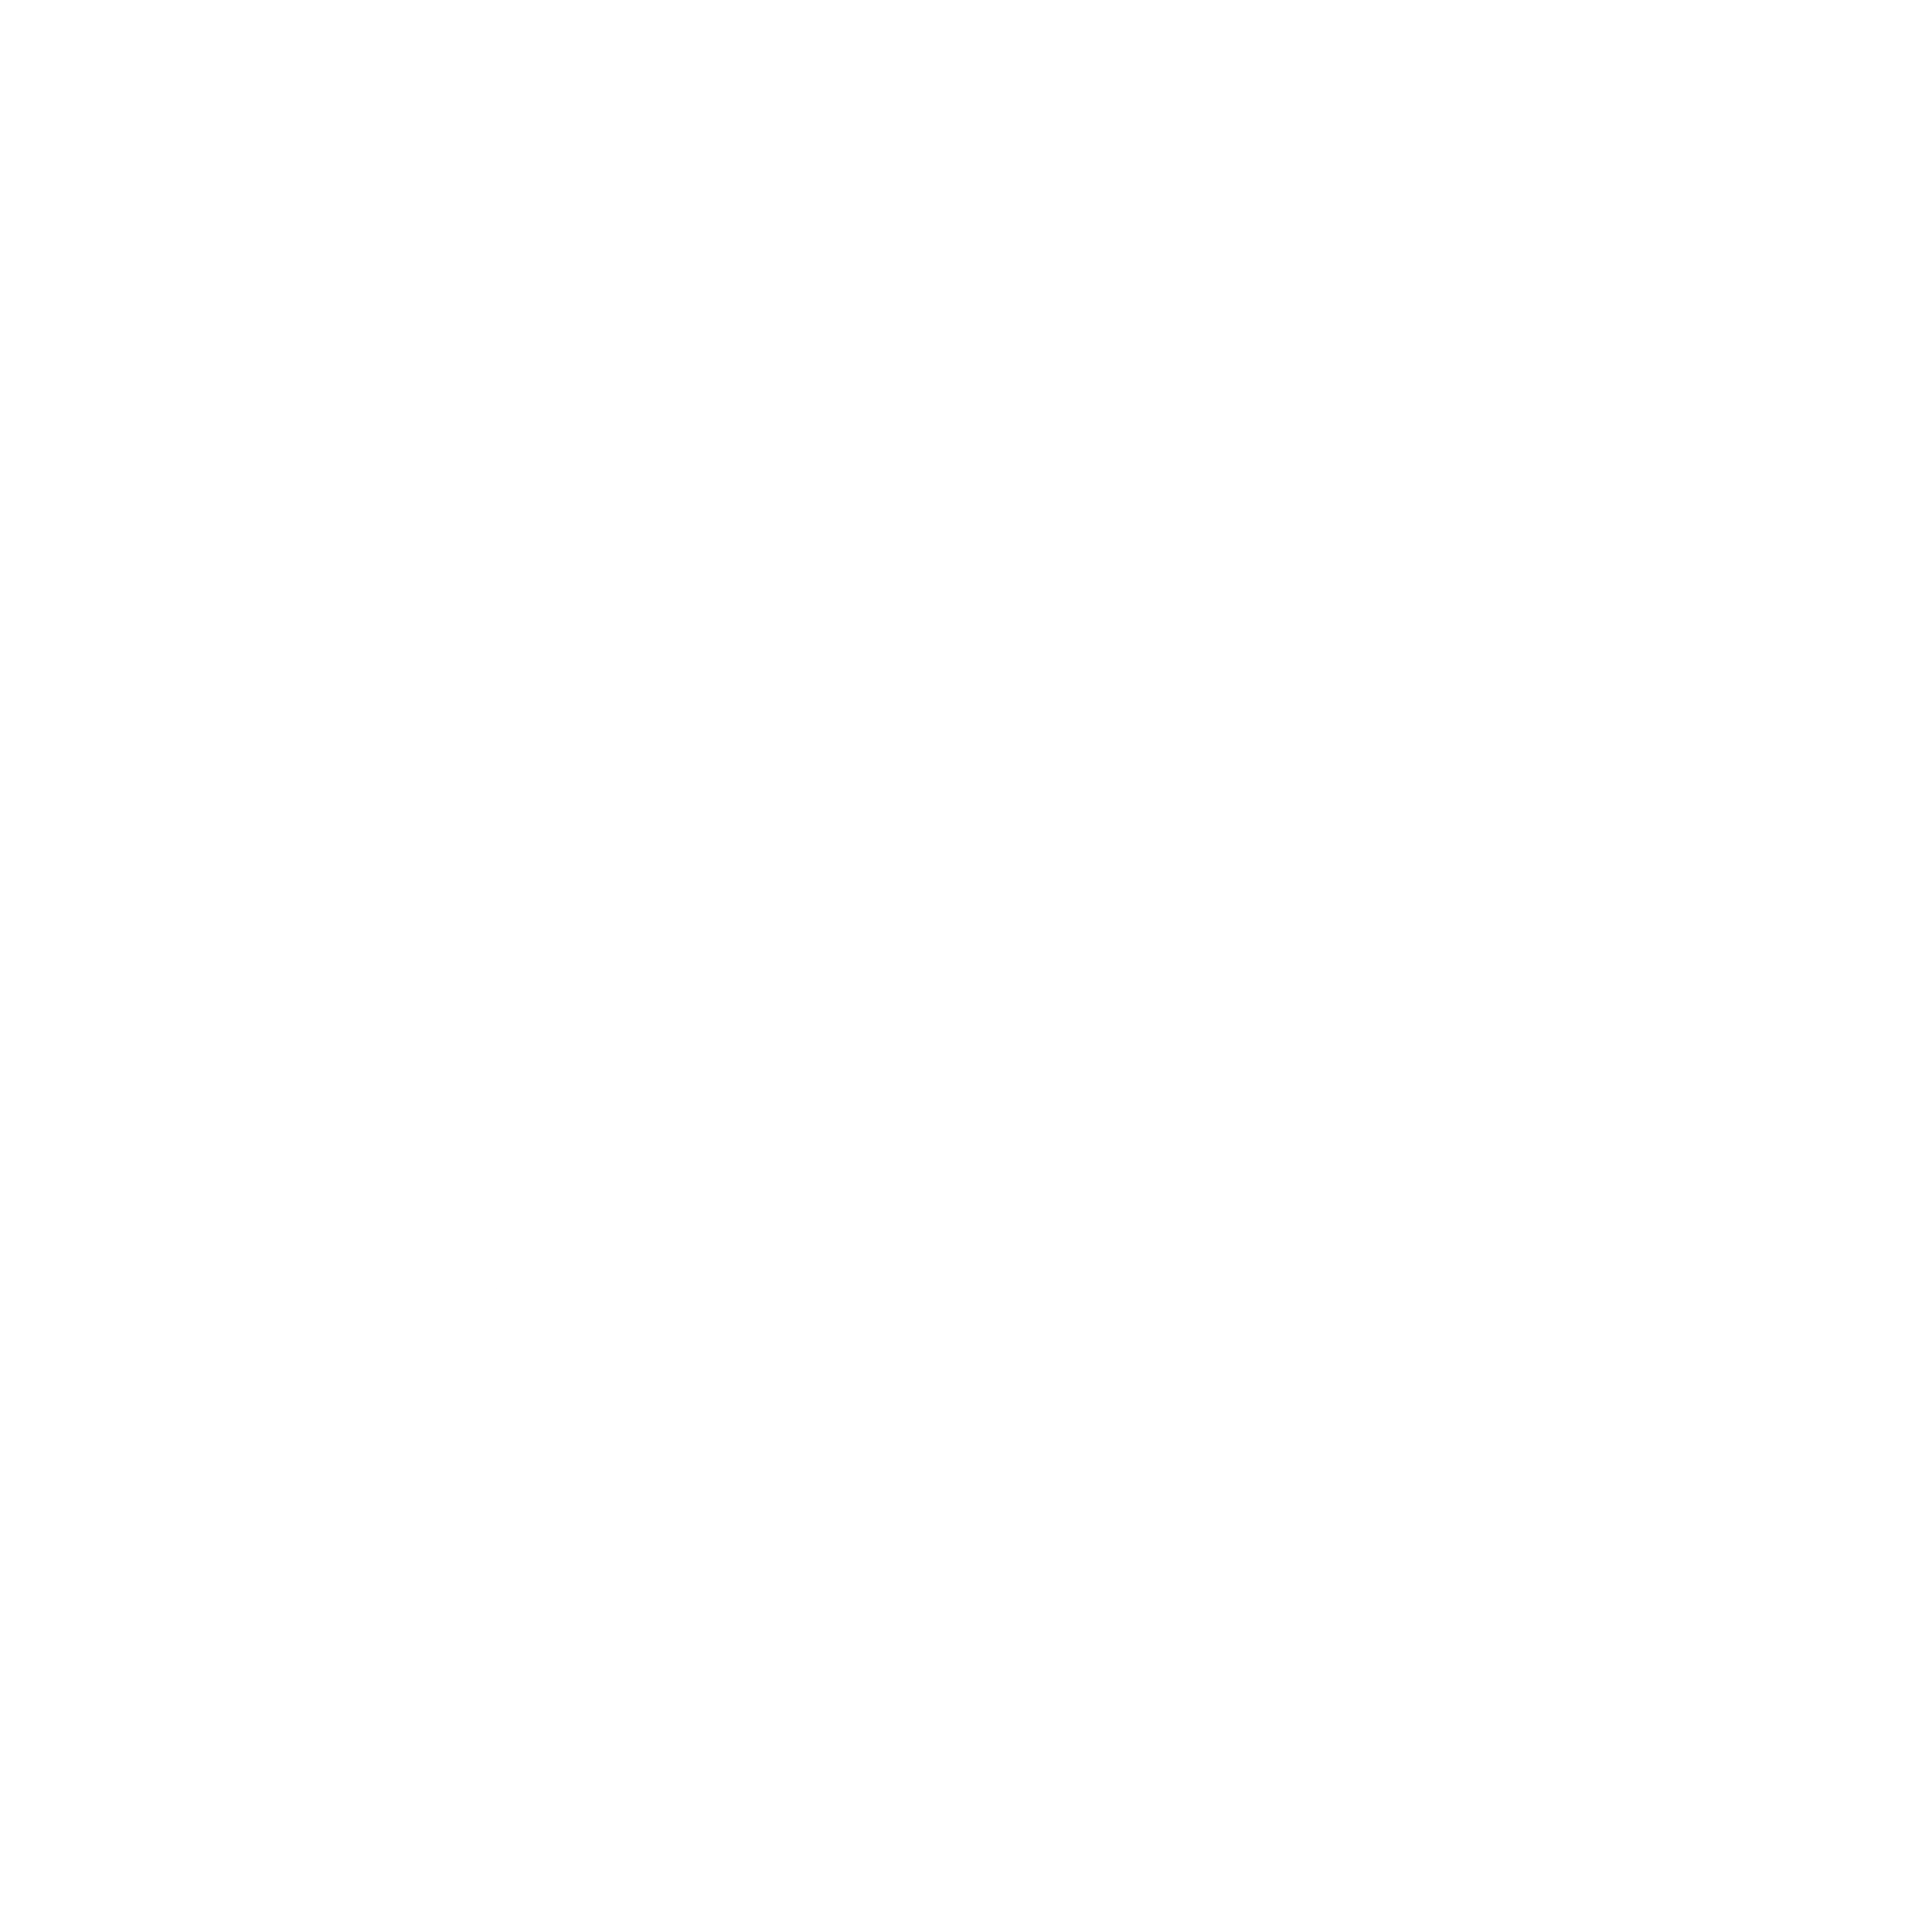 Daily Digital